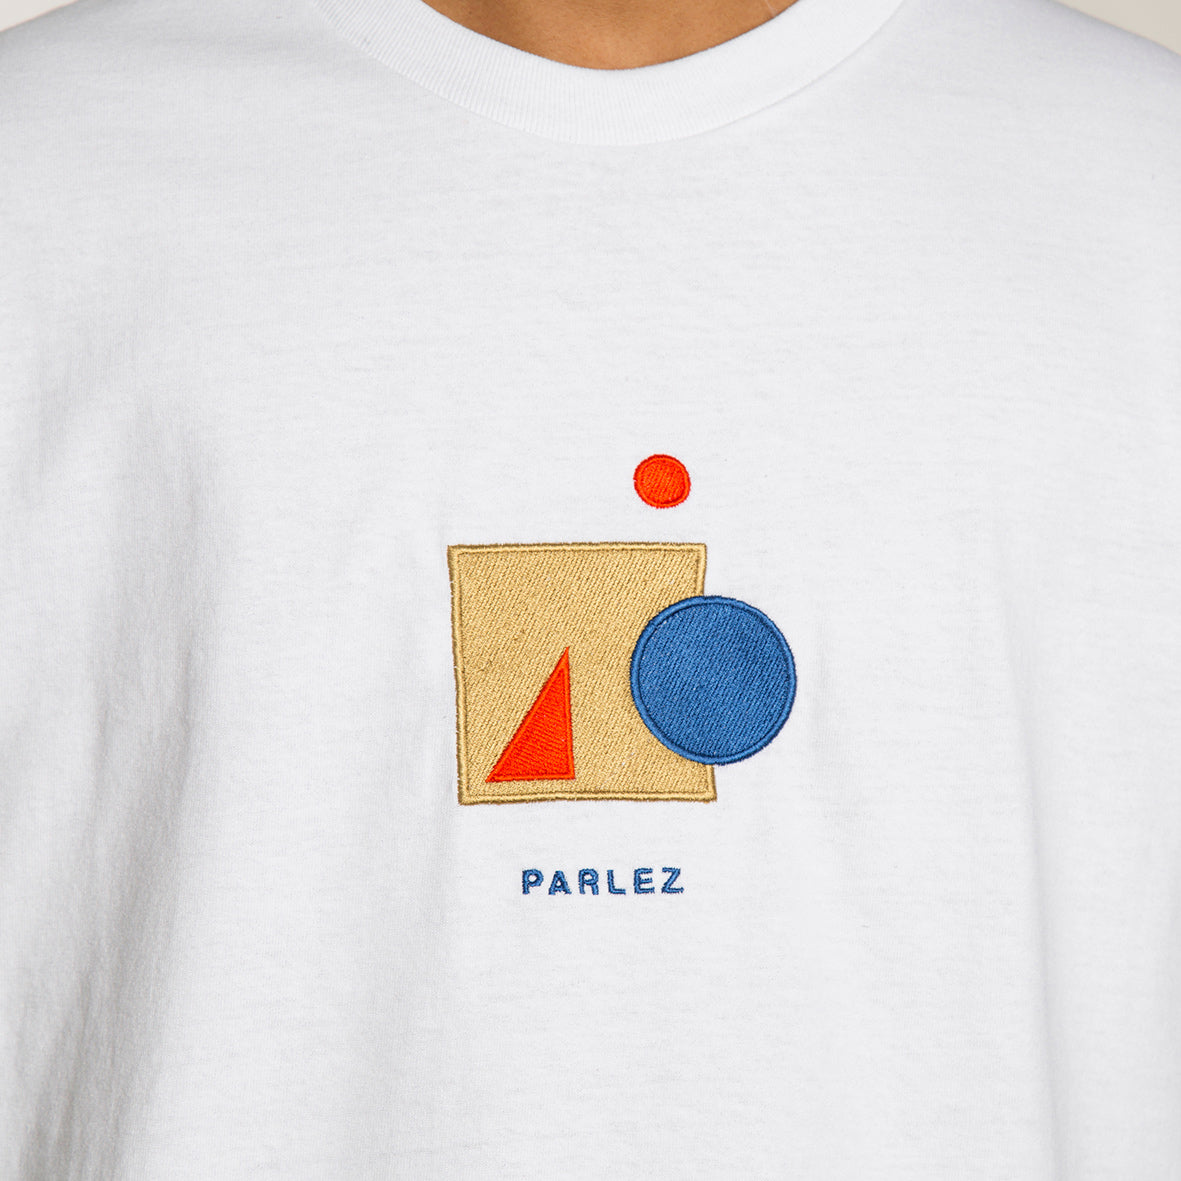 Parlez Camiseta Saintes - PARHW20834 - Colección Chico